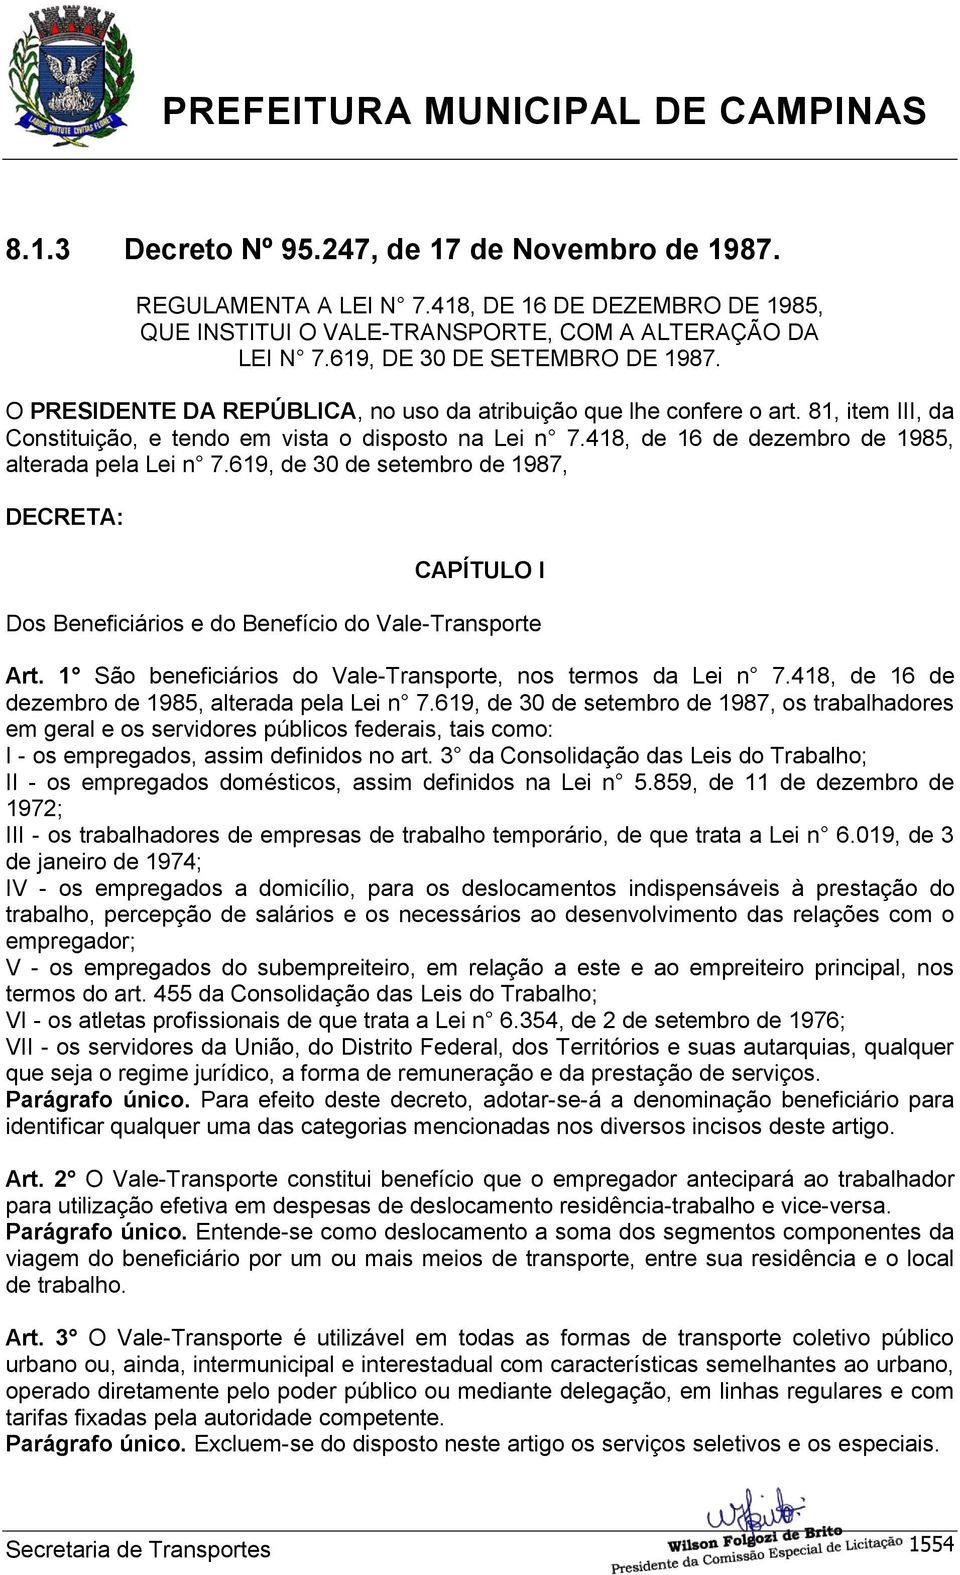 619, de 30 de setembro de 1987, DECRETA: CAPÍTULO I Dos Beneficiários e do Benefício do Vale-Transporte Art. 1 São beneficiários do Vale-Transporte, nos termos da Lei n 7.